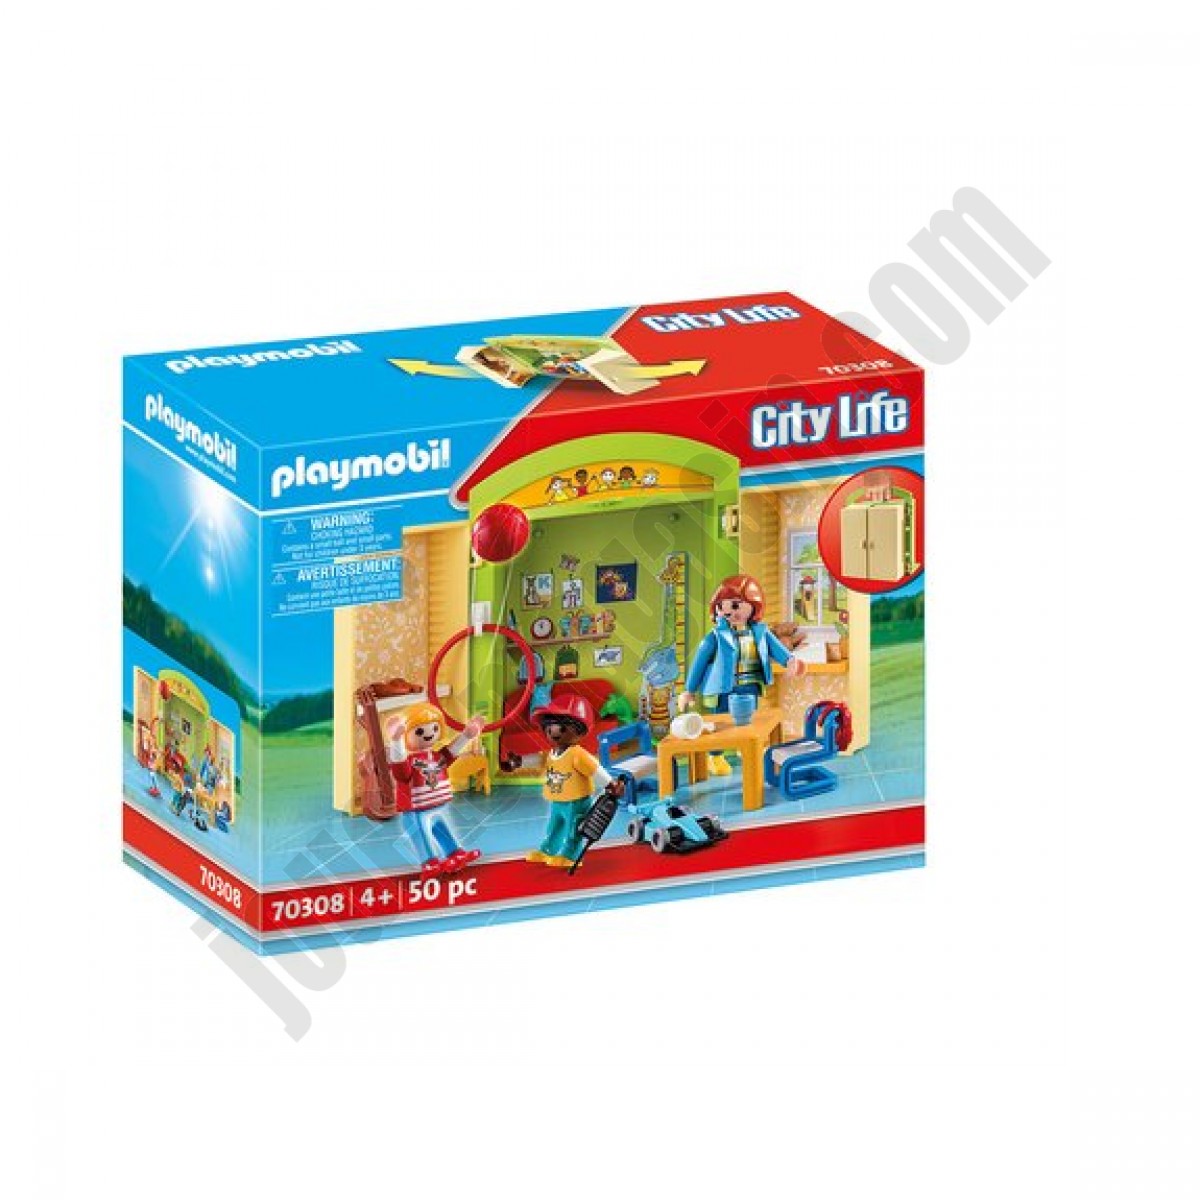 Coffre Garderie Playmobil City Life 70308 ◆◆◆ Nouveau - Coffre Garderie Playmobil City Life 70308 ◆◆◆ Nouveau